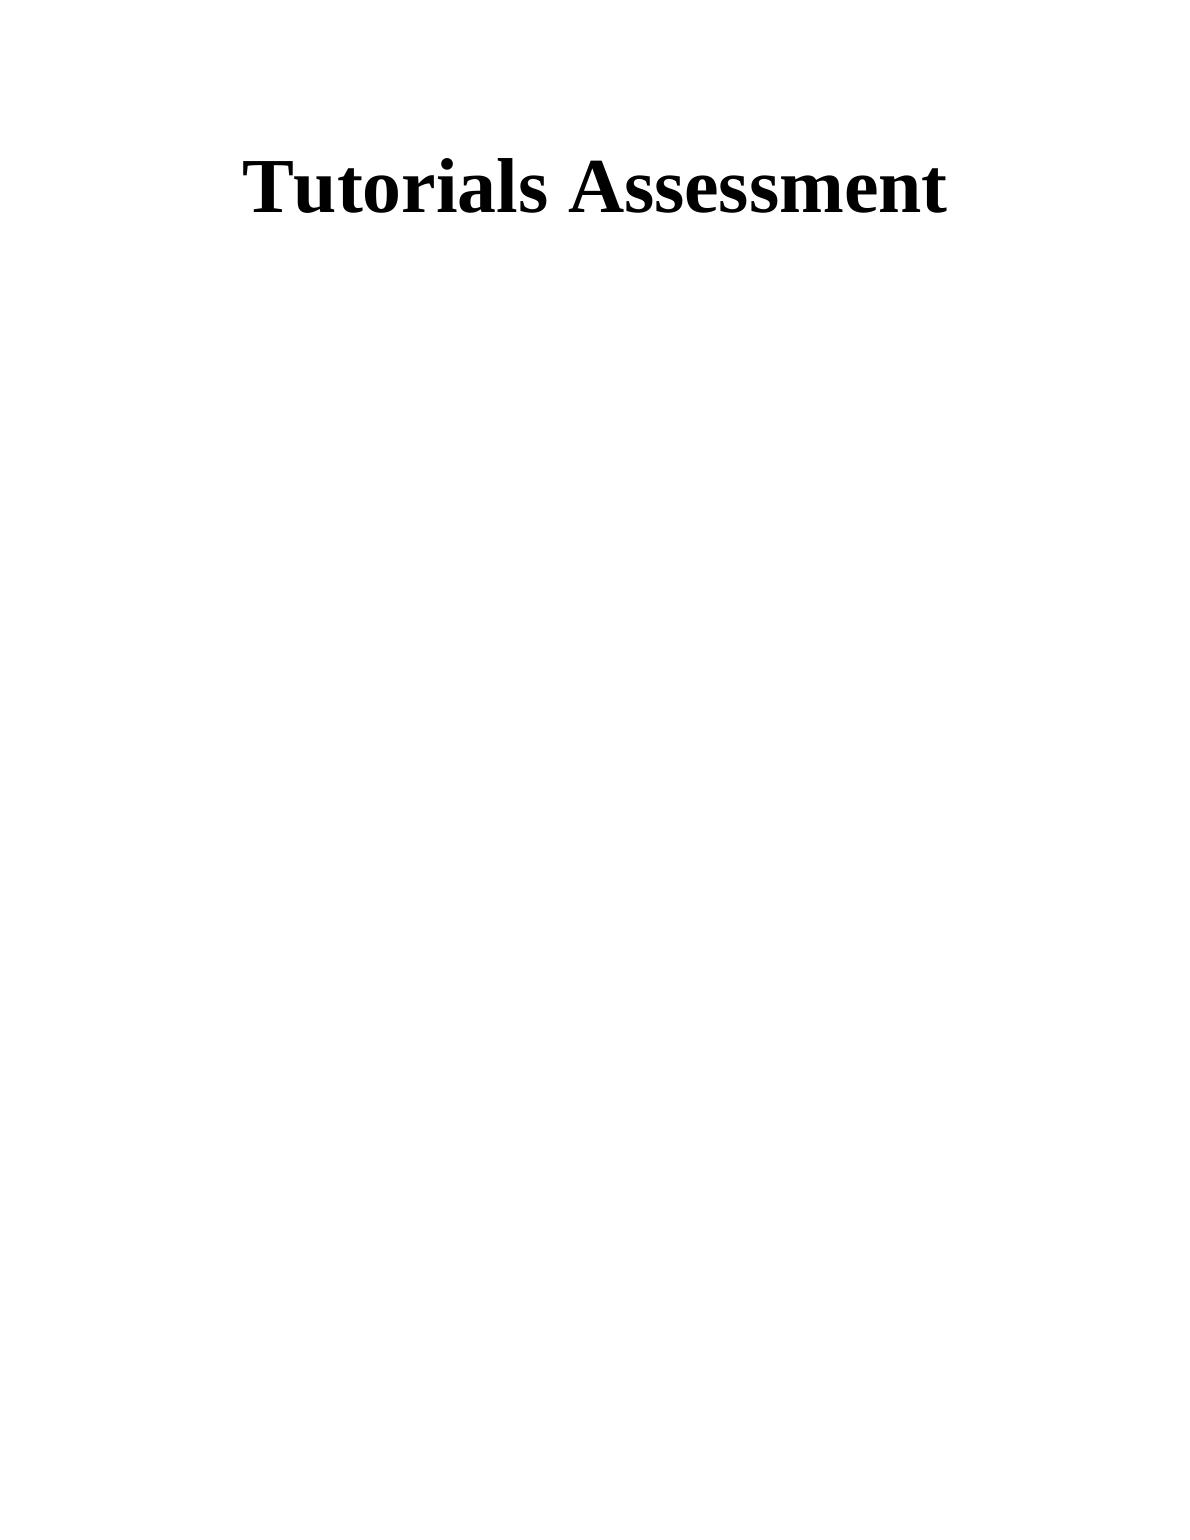 Tutorials Assessment_1